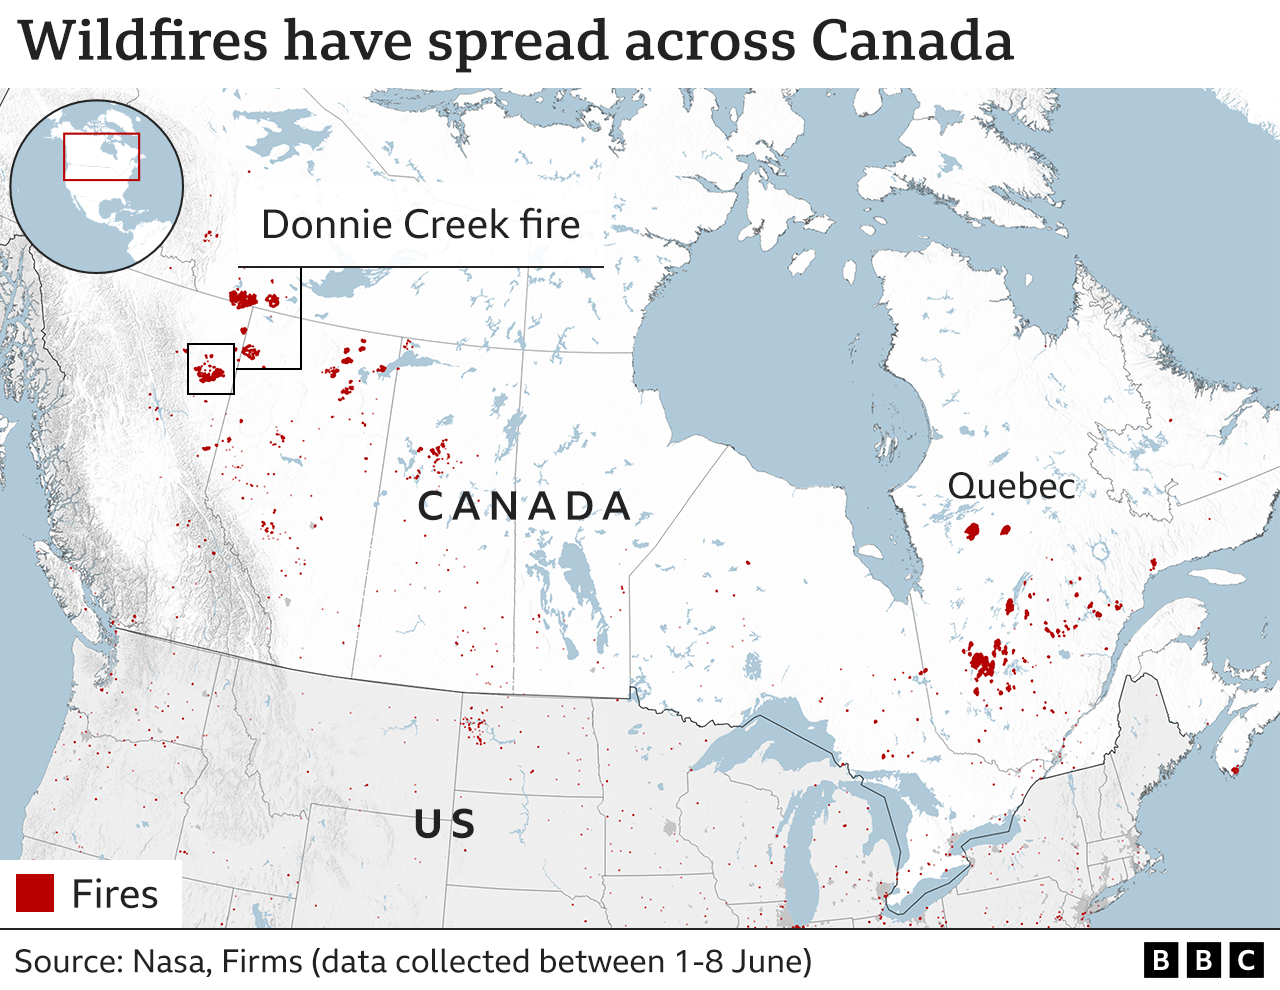 Карта, показывающая расположение пожаров по всей Канаде, включая самый большой пожар в Британской Колумбии и еще один большой кластер в Квебеке